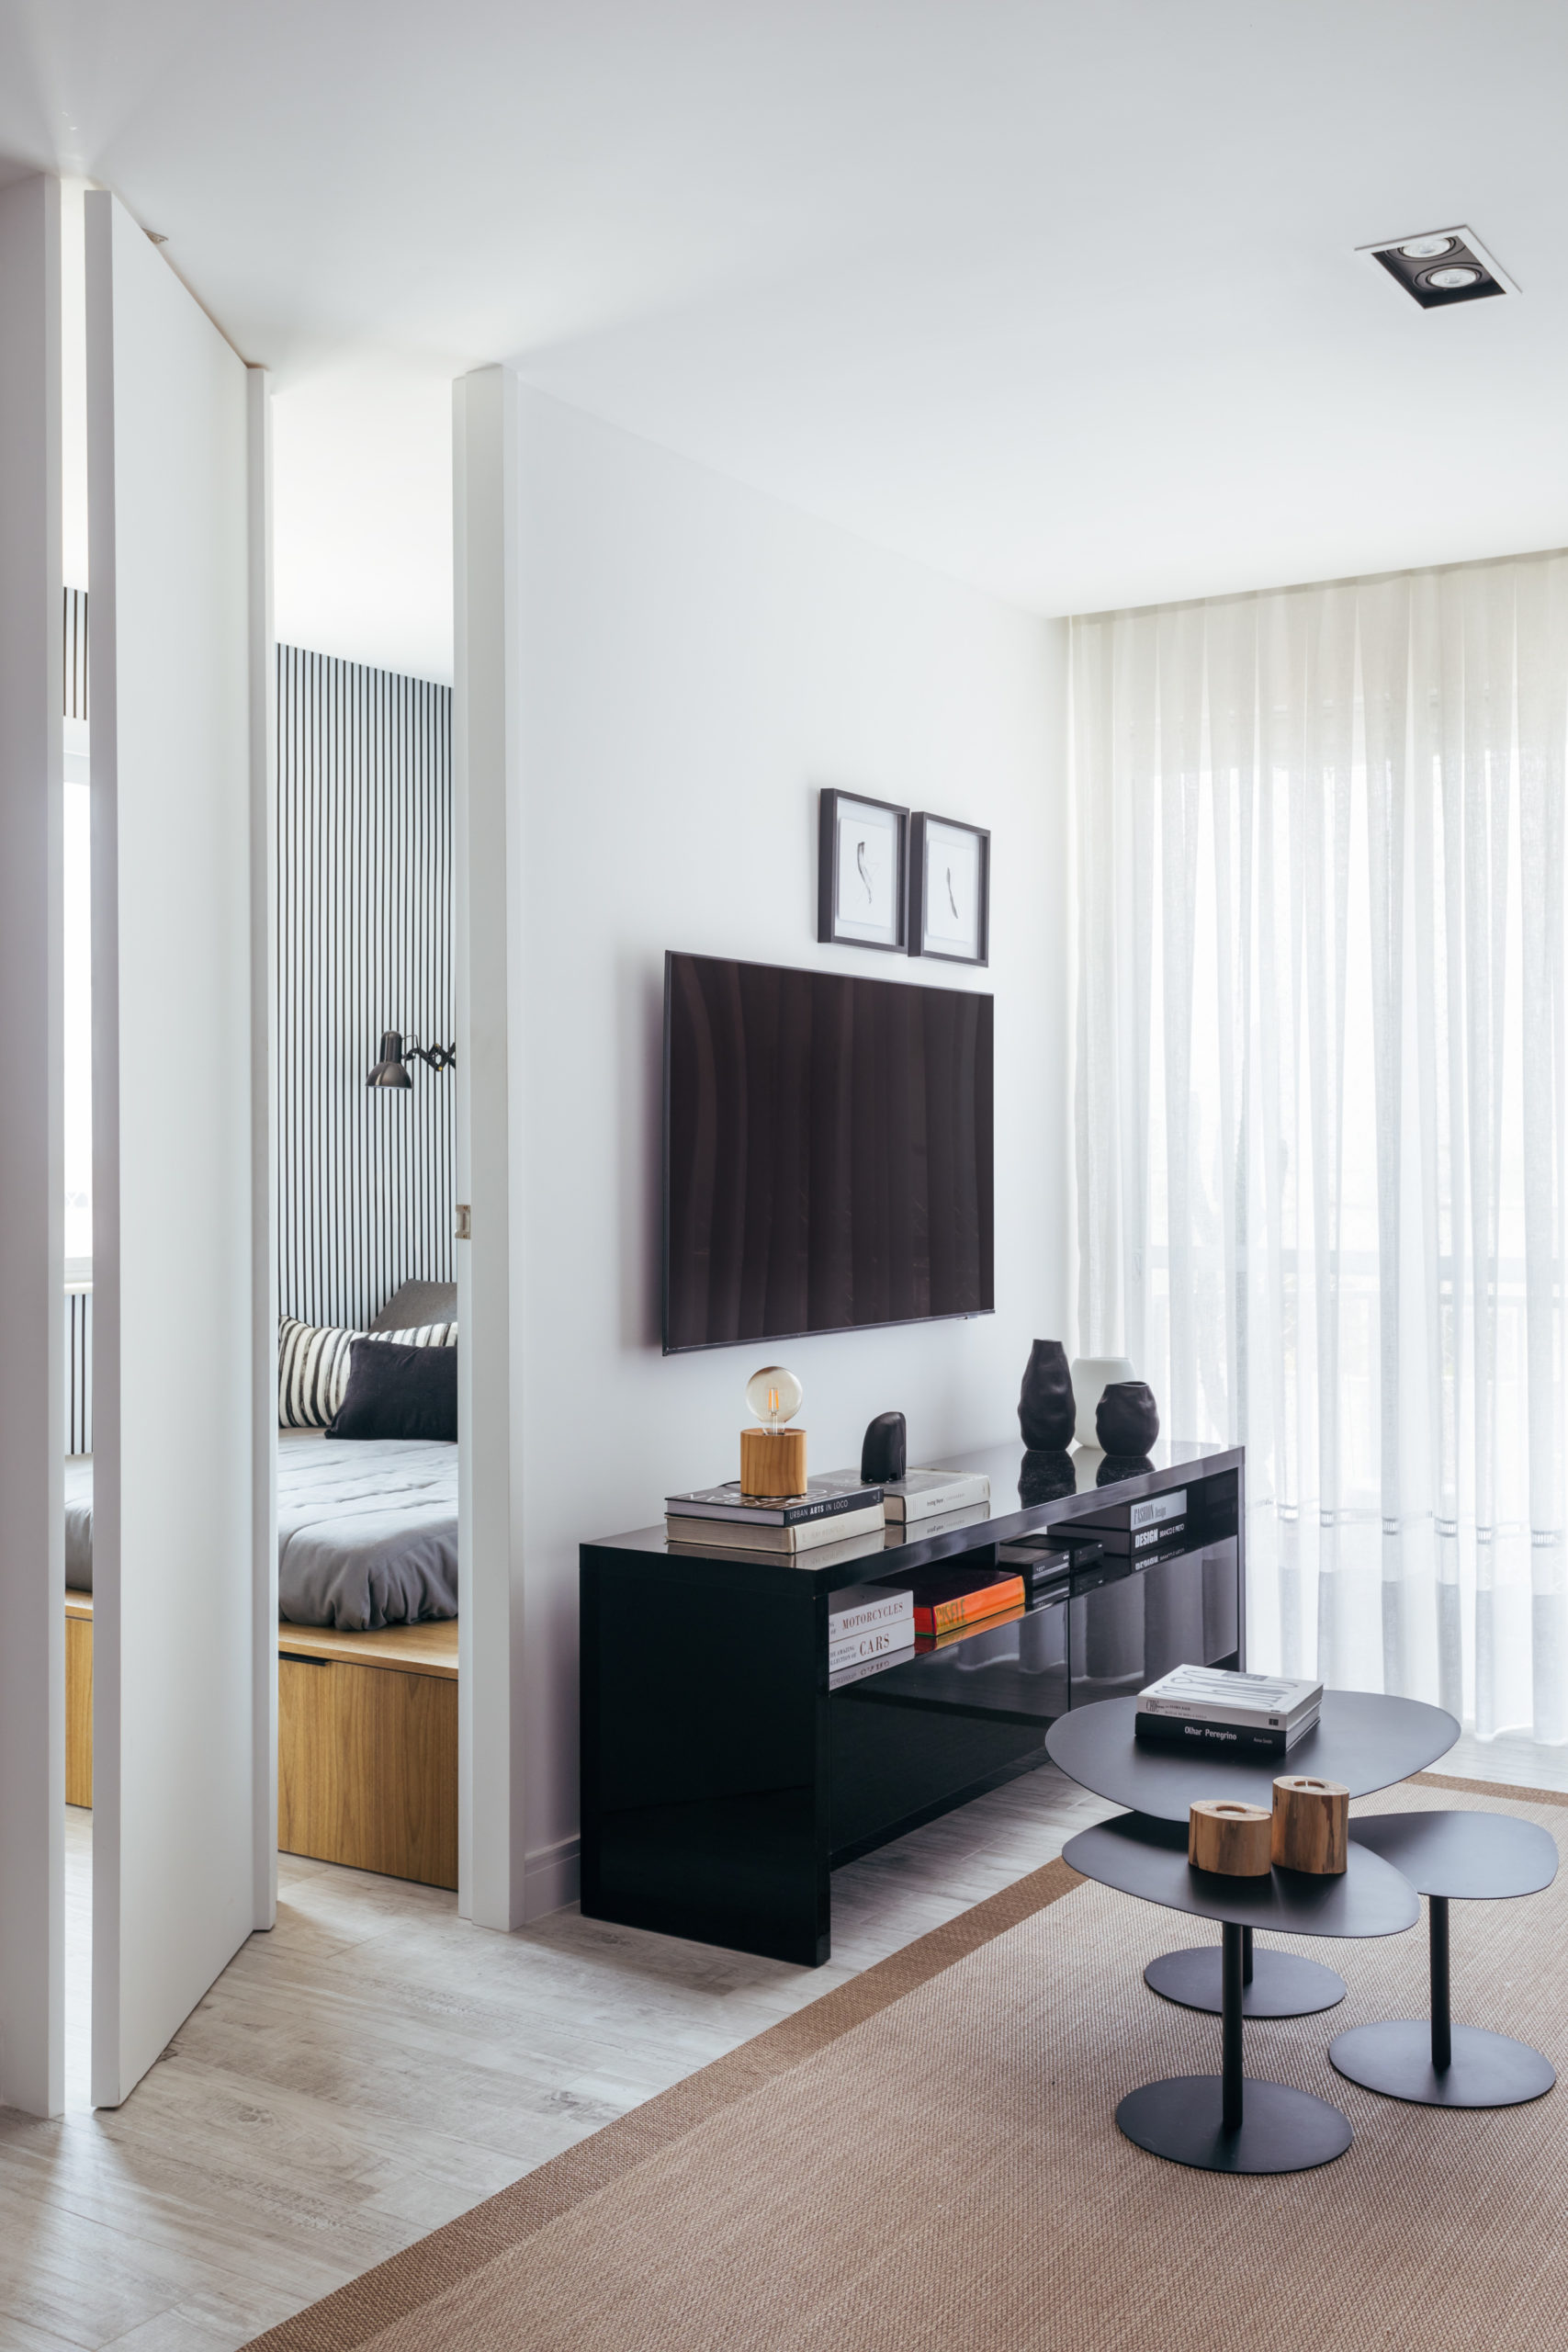 Releitura contemporânea do estilo escandinavo e orçamento enxuto guiam o projeto deste apartamento de 84m2 no Lebon (RJ), assinado pelo arquiteto Nilton Montarroyos.